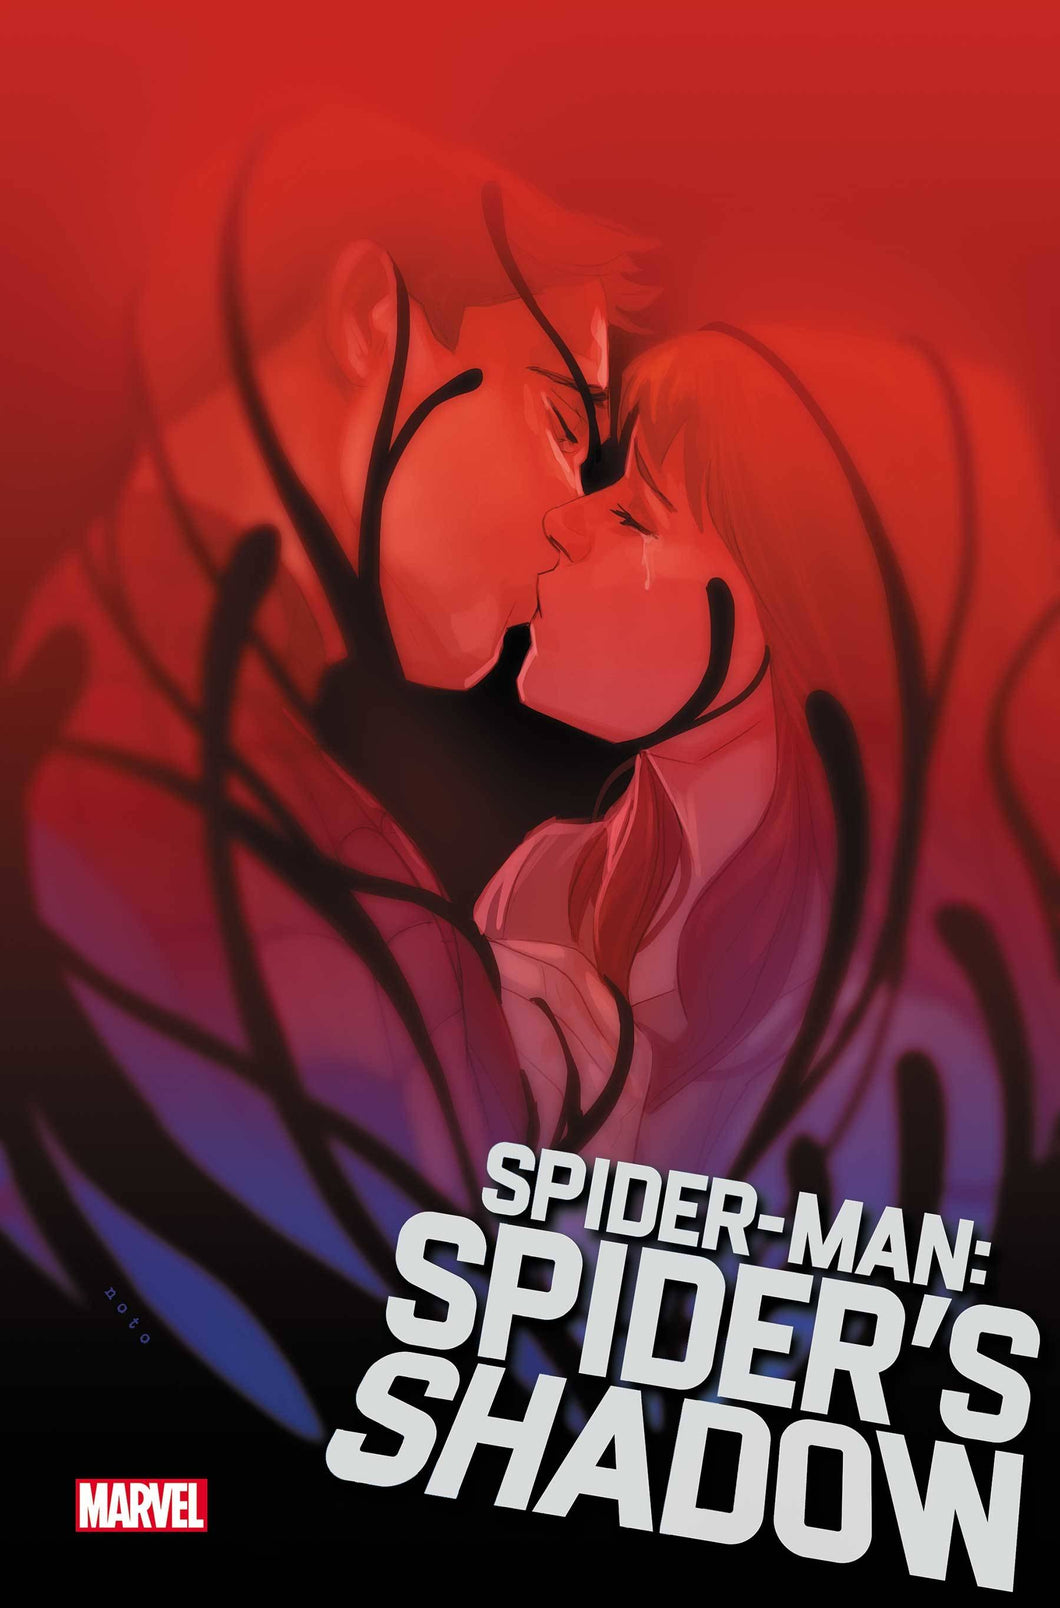 SPIDER-MAN SPIDERS SHADOW #4